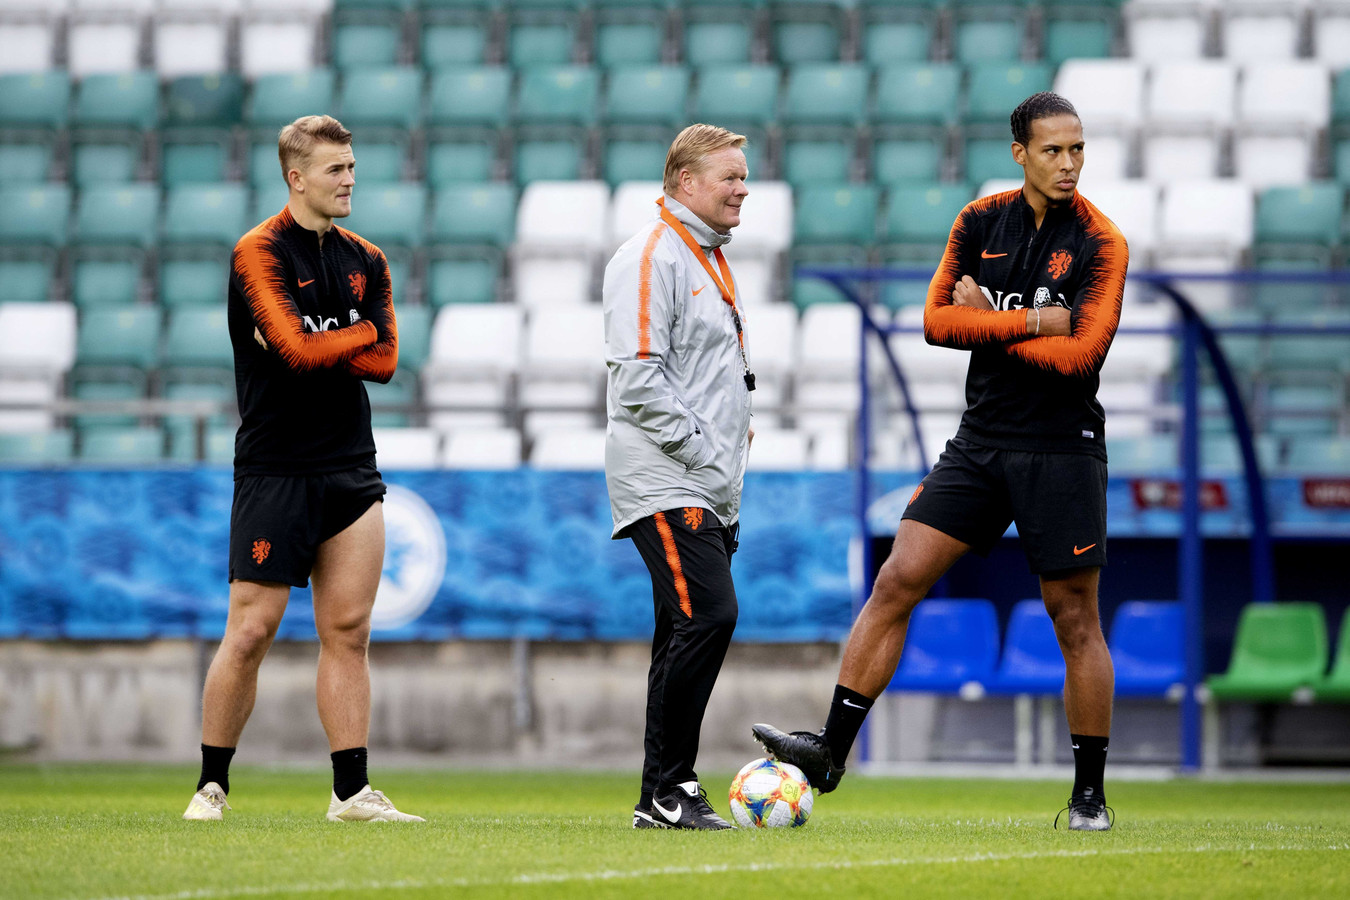 Dutch team disappointed with Koeman's departure - captain Van Dijk